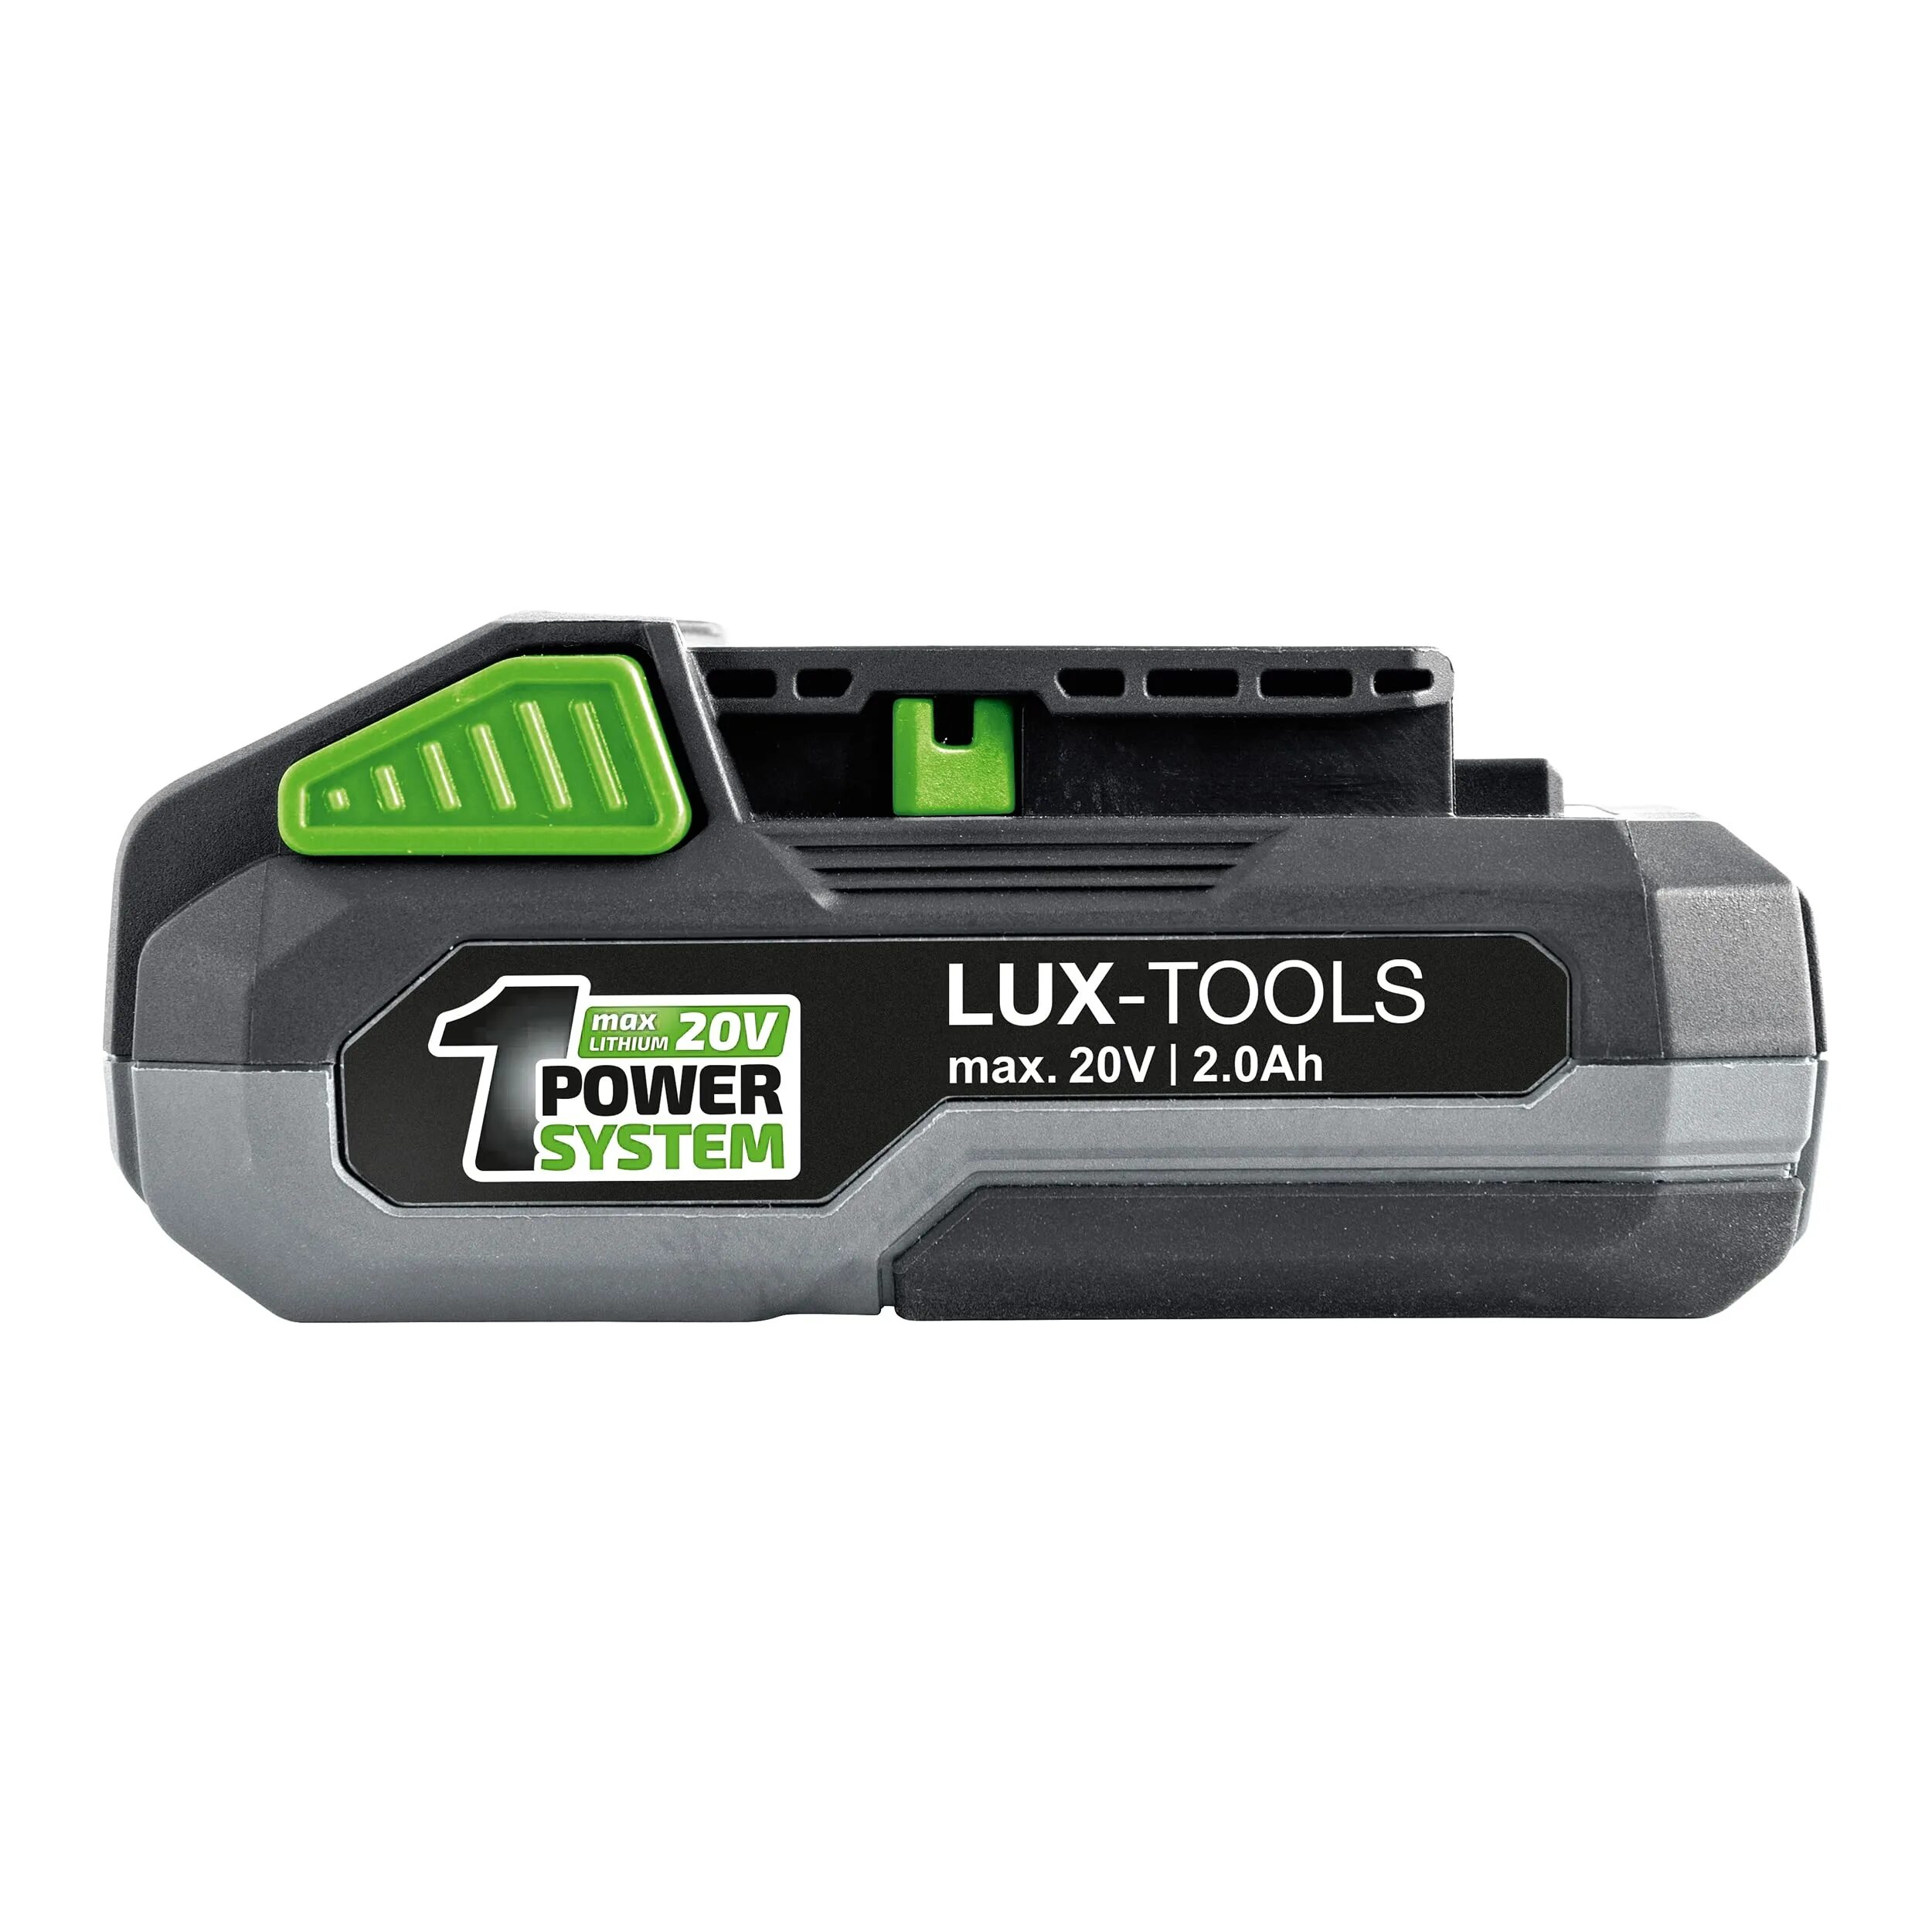 Аккумулятор Lux Tools 20v. Шуруповерт Lux Tools 20v аккумулятор. Аккумулятор Lux Tools 20v 2.0Ah. Аккумулятор Lux-Tools 20v Obi. Battery tool